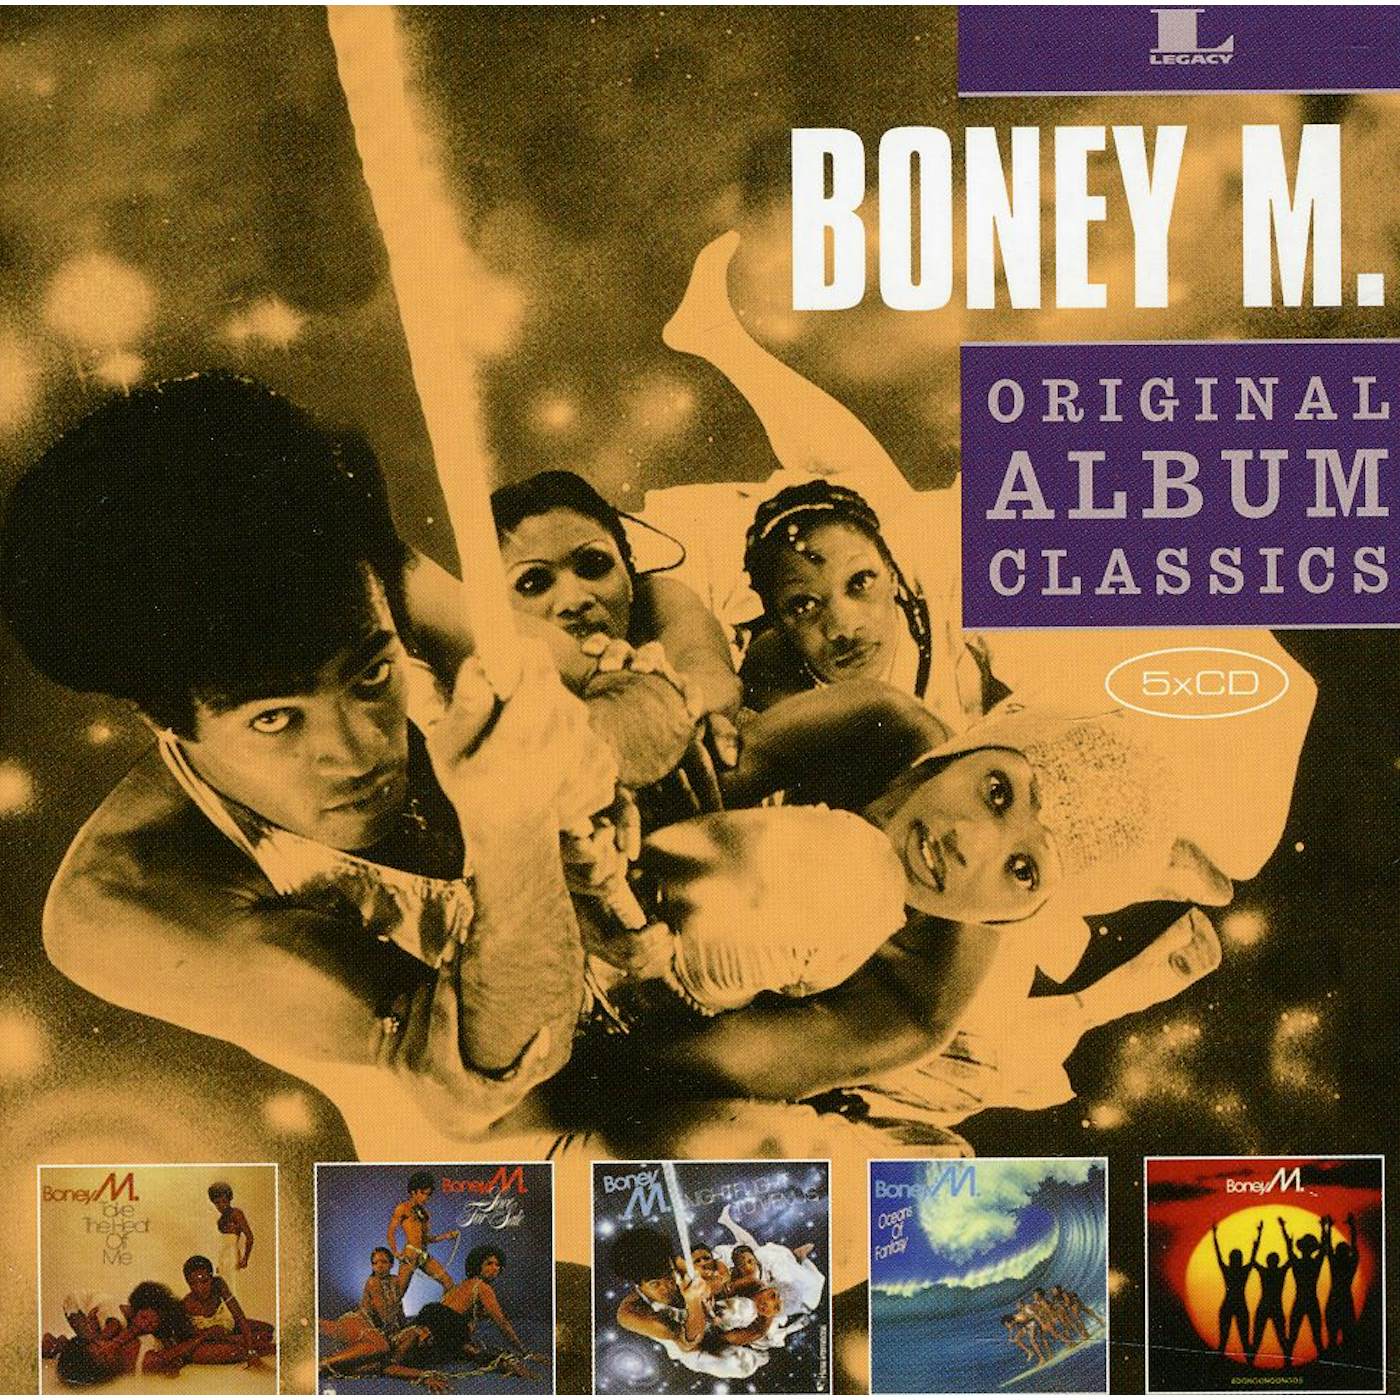 Boney M. ORIGINAL ALBUM CLASSICS CD